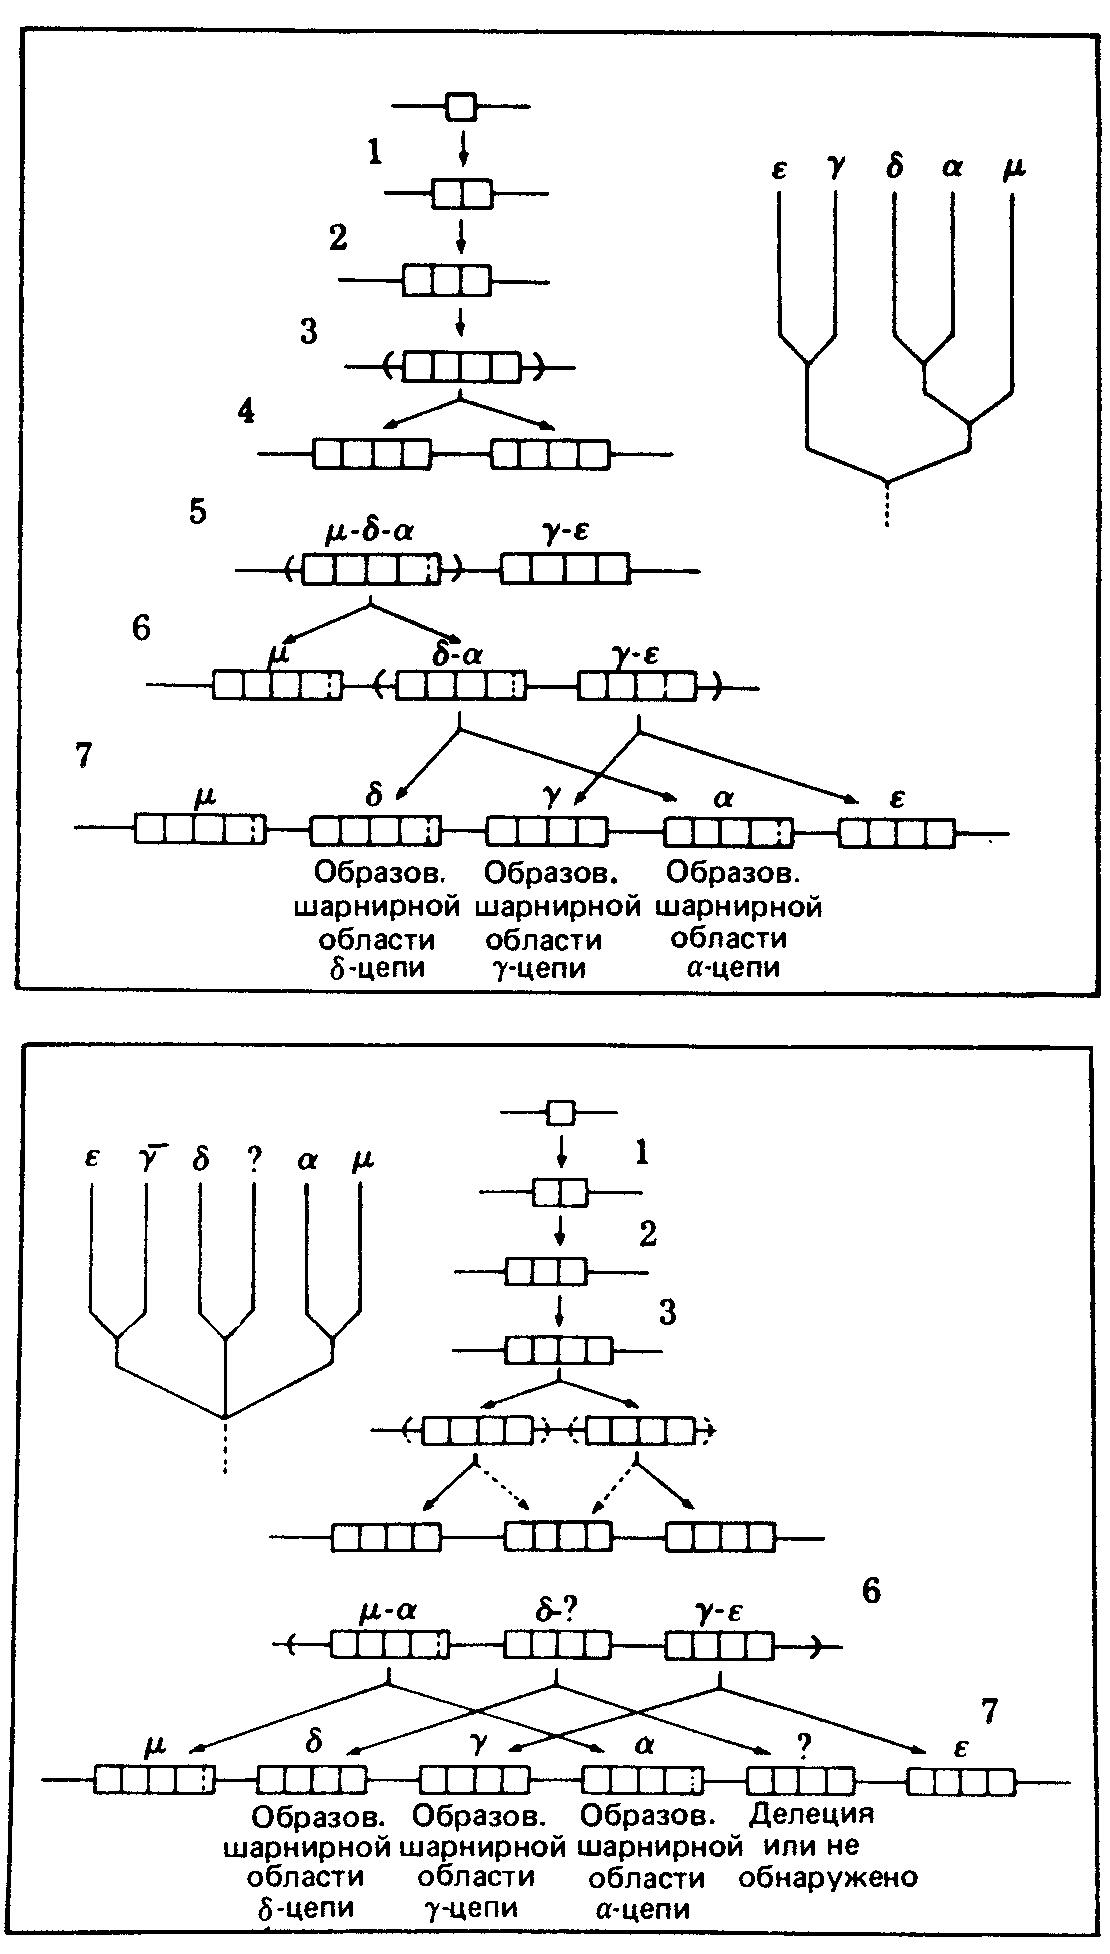 Две гипотетические схемы возможного генетического развития, приведшего к образованию группы генов константных областей тяжелых цепей